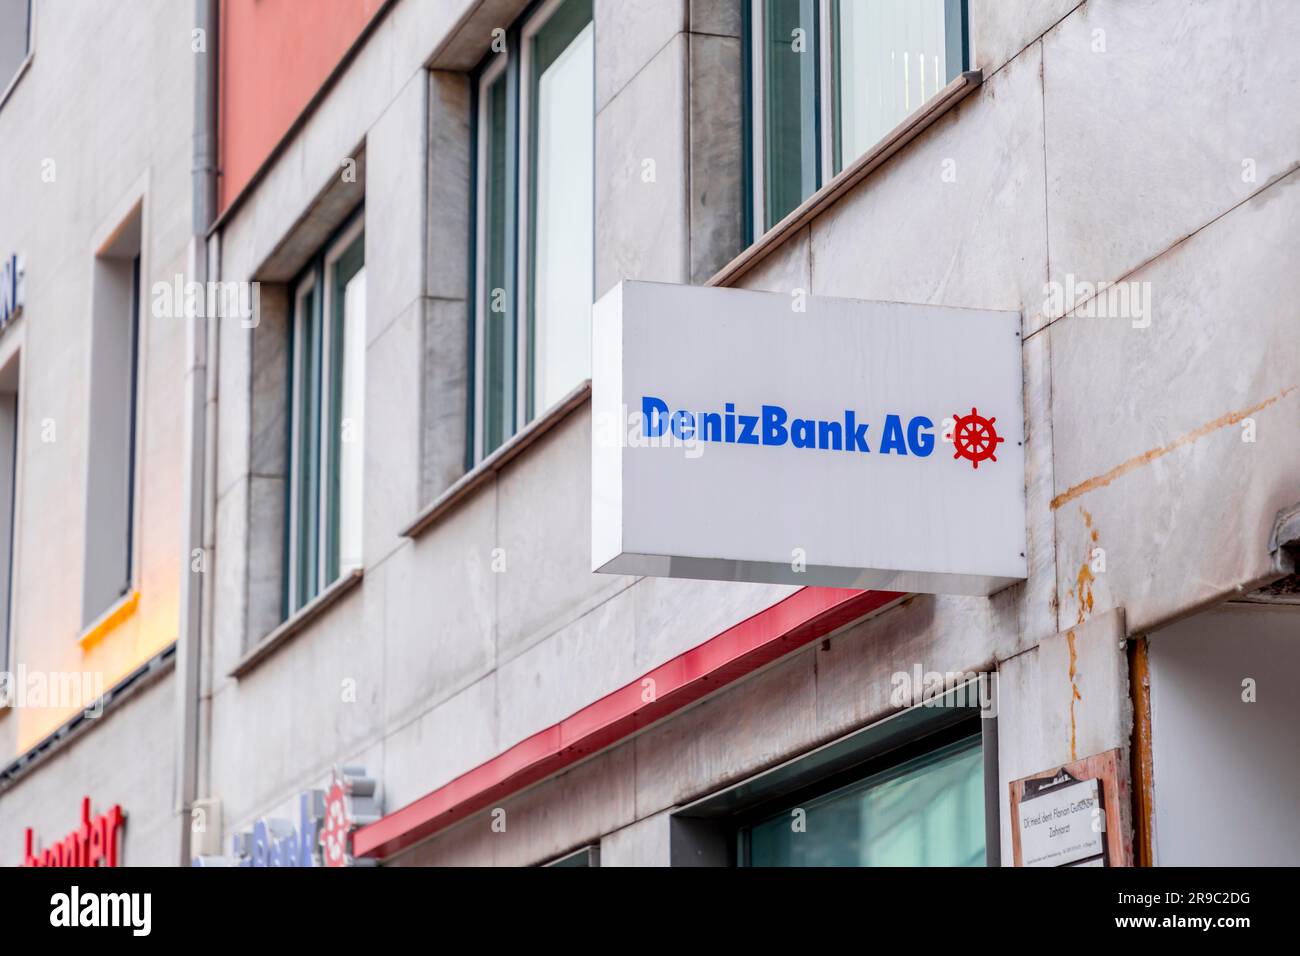 Múnich, Alemania - 23 de diciembre de 2021: Sucursal en Múnich de DenizBank AG, un importante banco turco que opera a nivel internacional, con sede en Dubái. Foto de stock